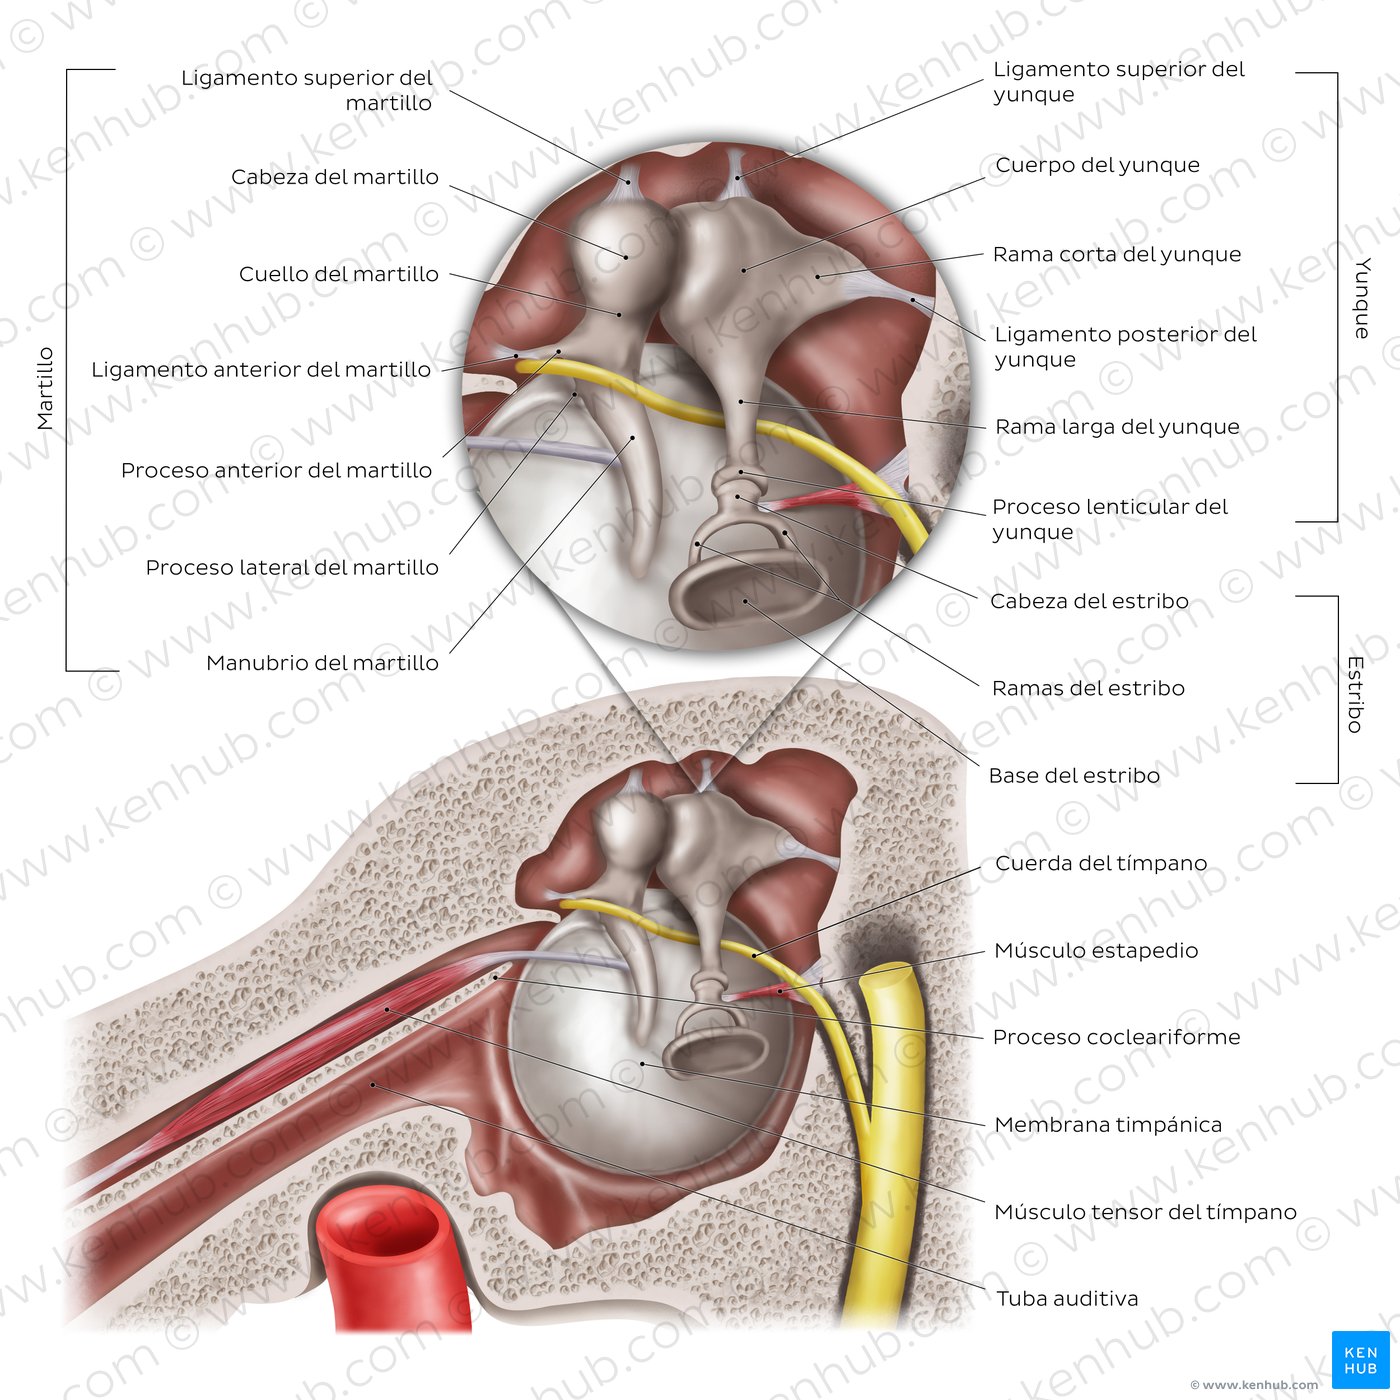 Anatomía del oído medio: Sección sagital